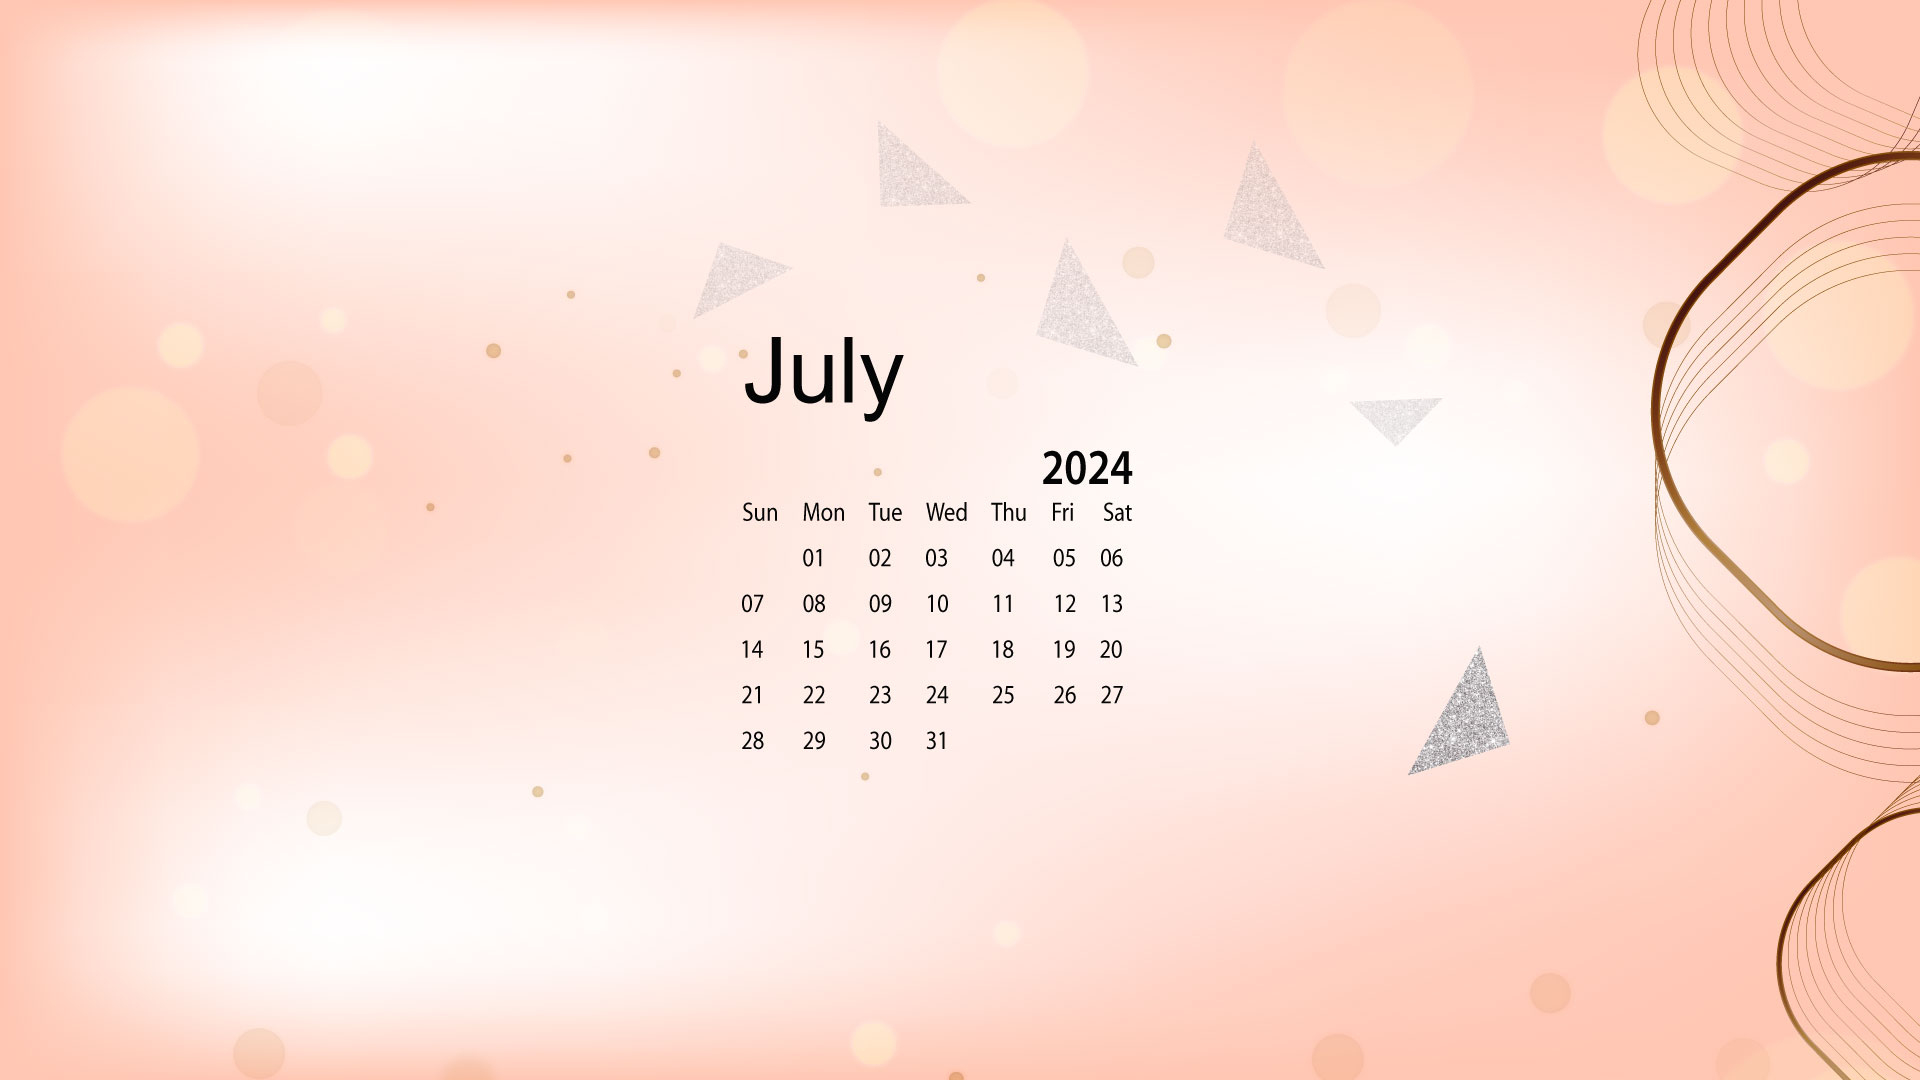 July 2024 Desktop Wallpaper Calendar - Calendarlabs | Calendar 2024